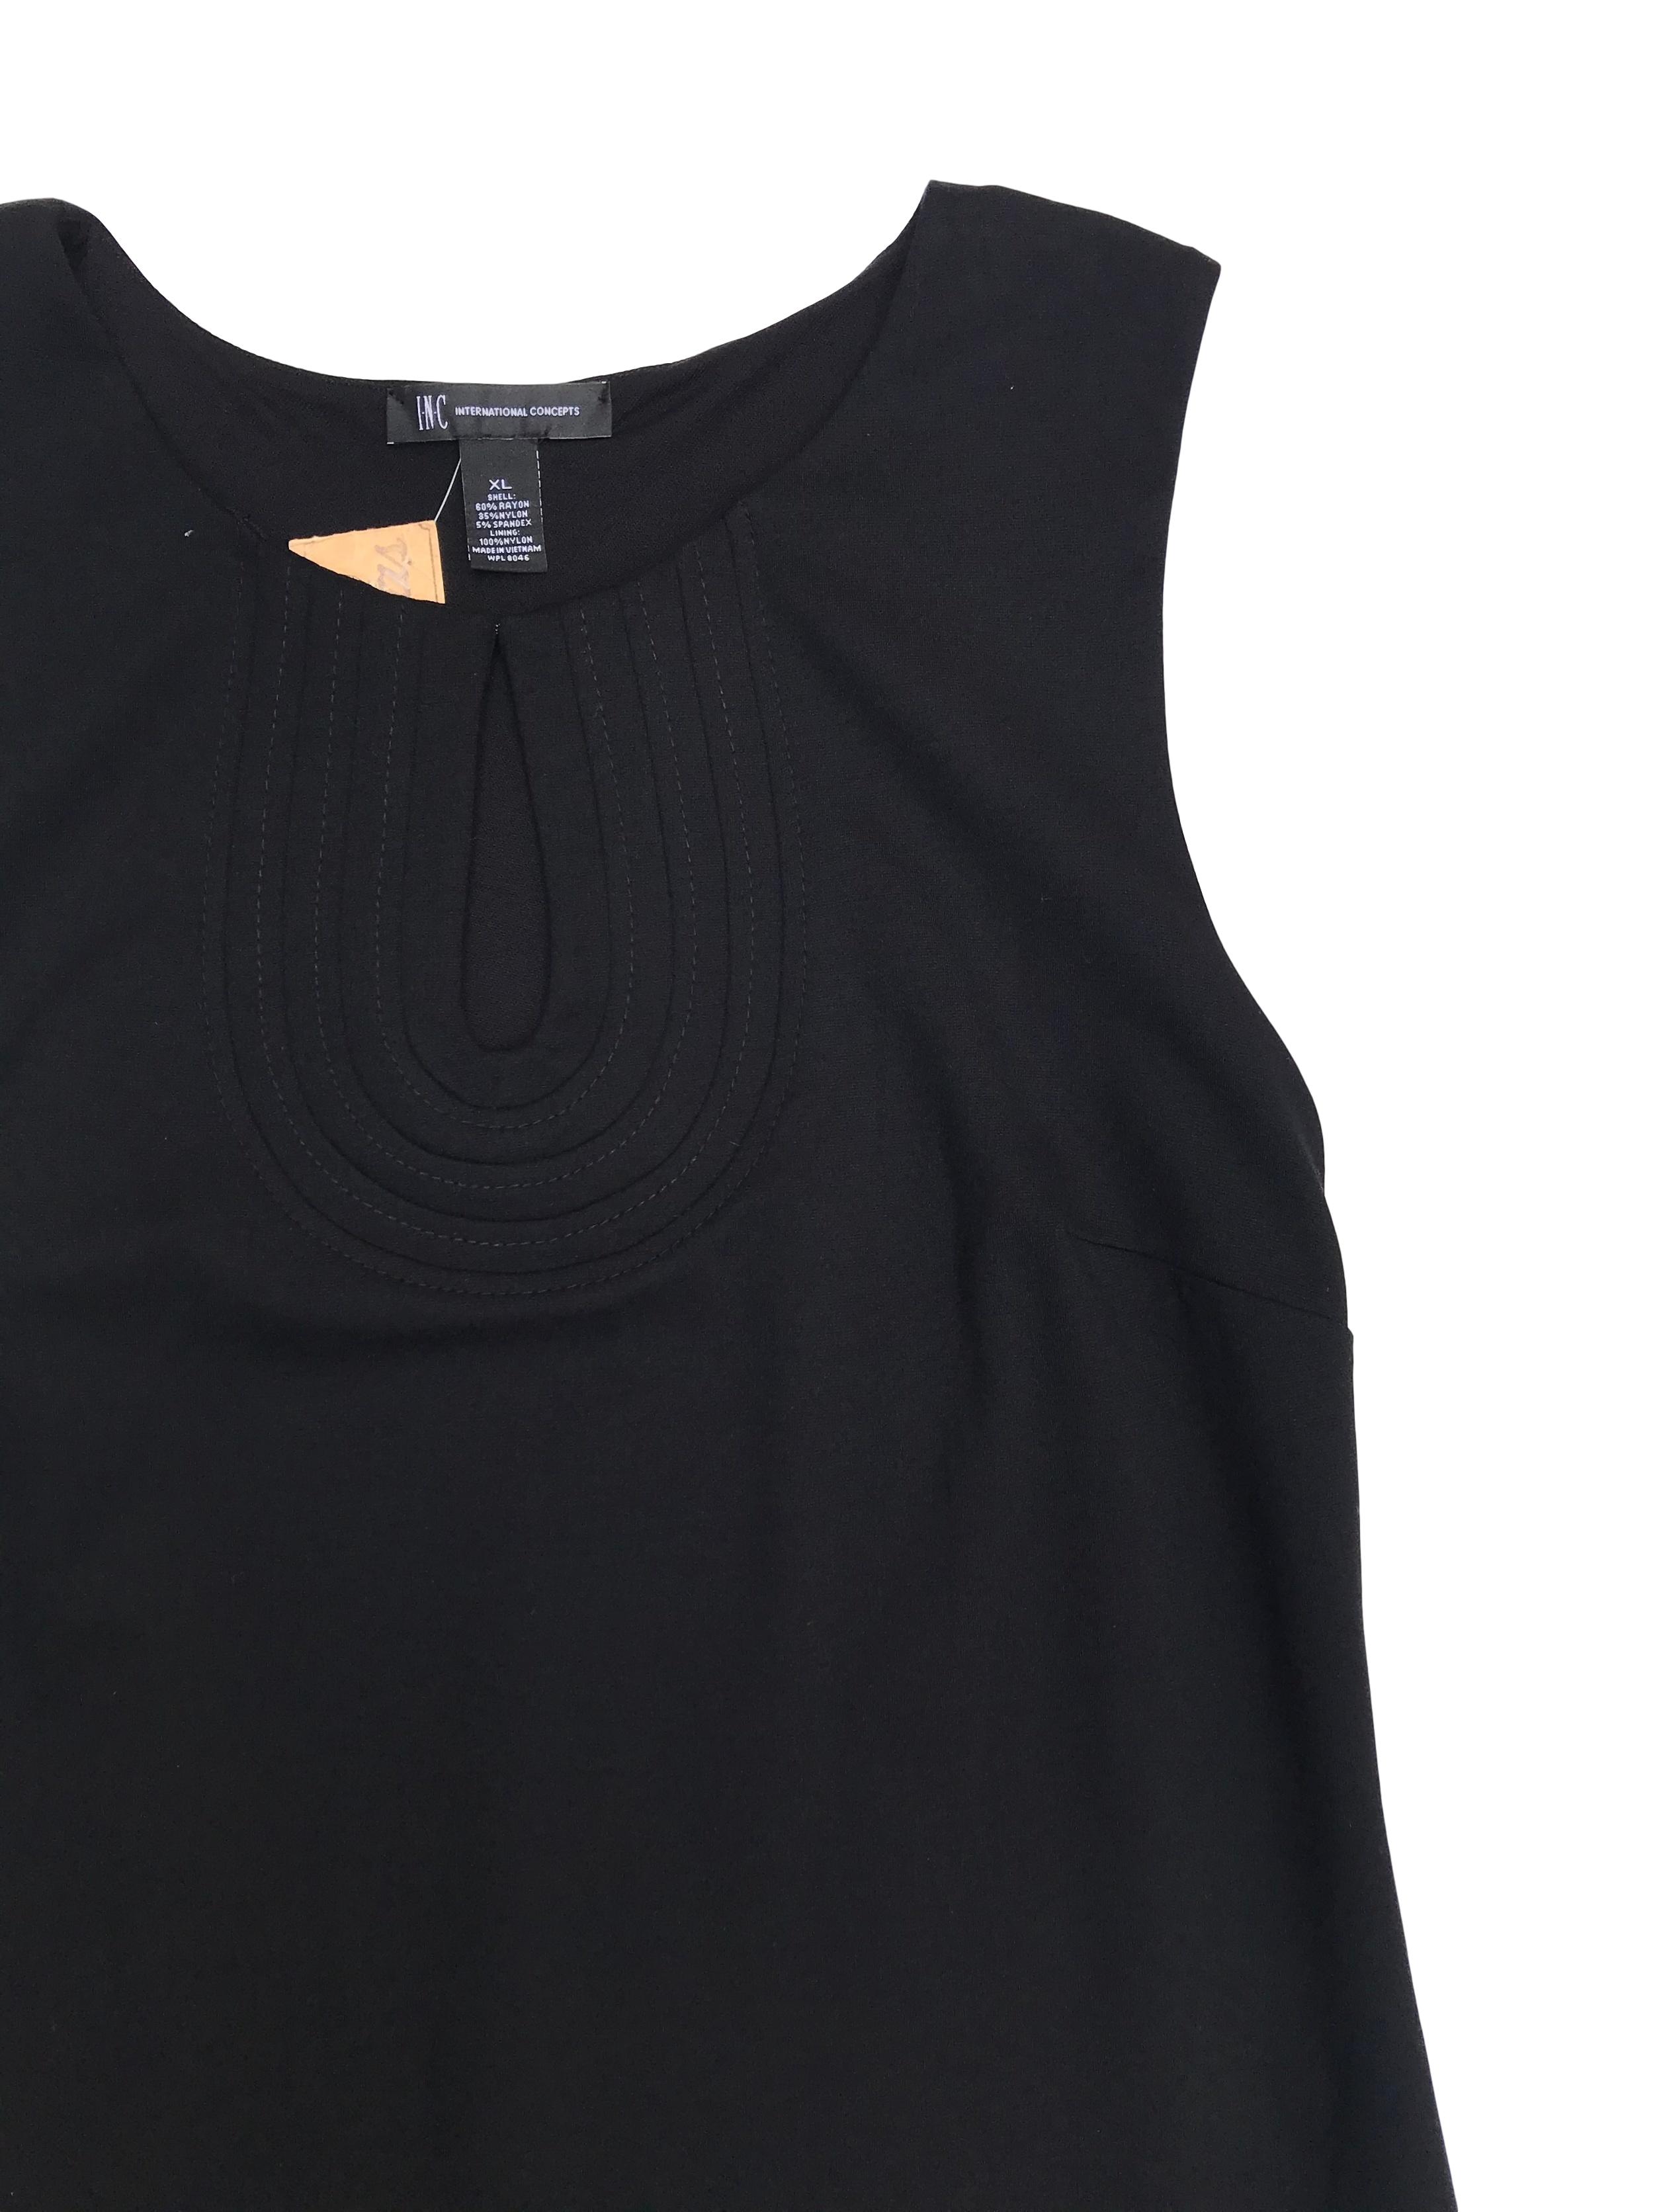 Vestido International Concepts, negro de tela gruesa stretch, forrado, con escote gota en el pecho y pespuntes, es pegado a cuerpo. Largo 95cm, busto hasta 110cm Precio original S/300 